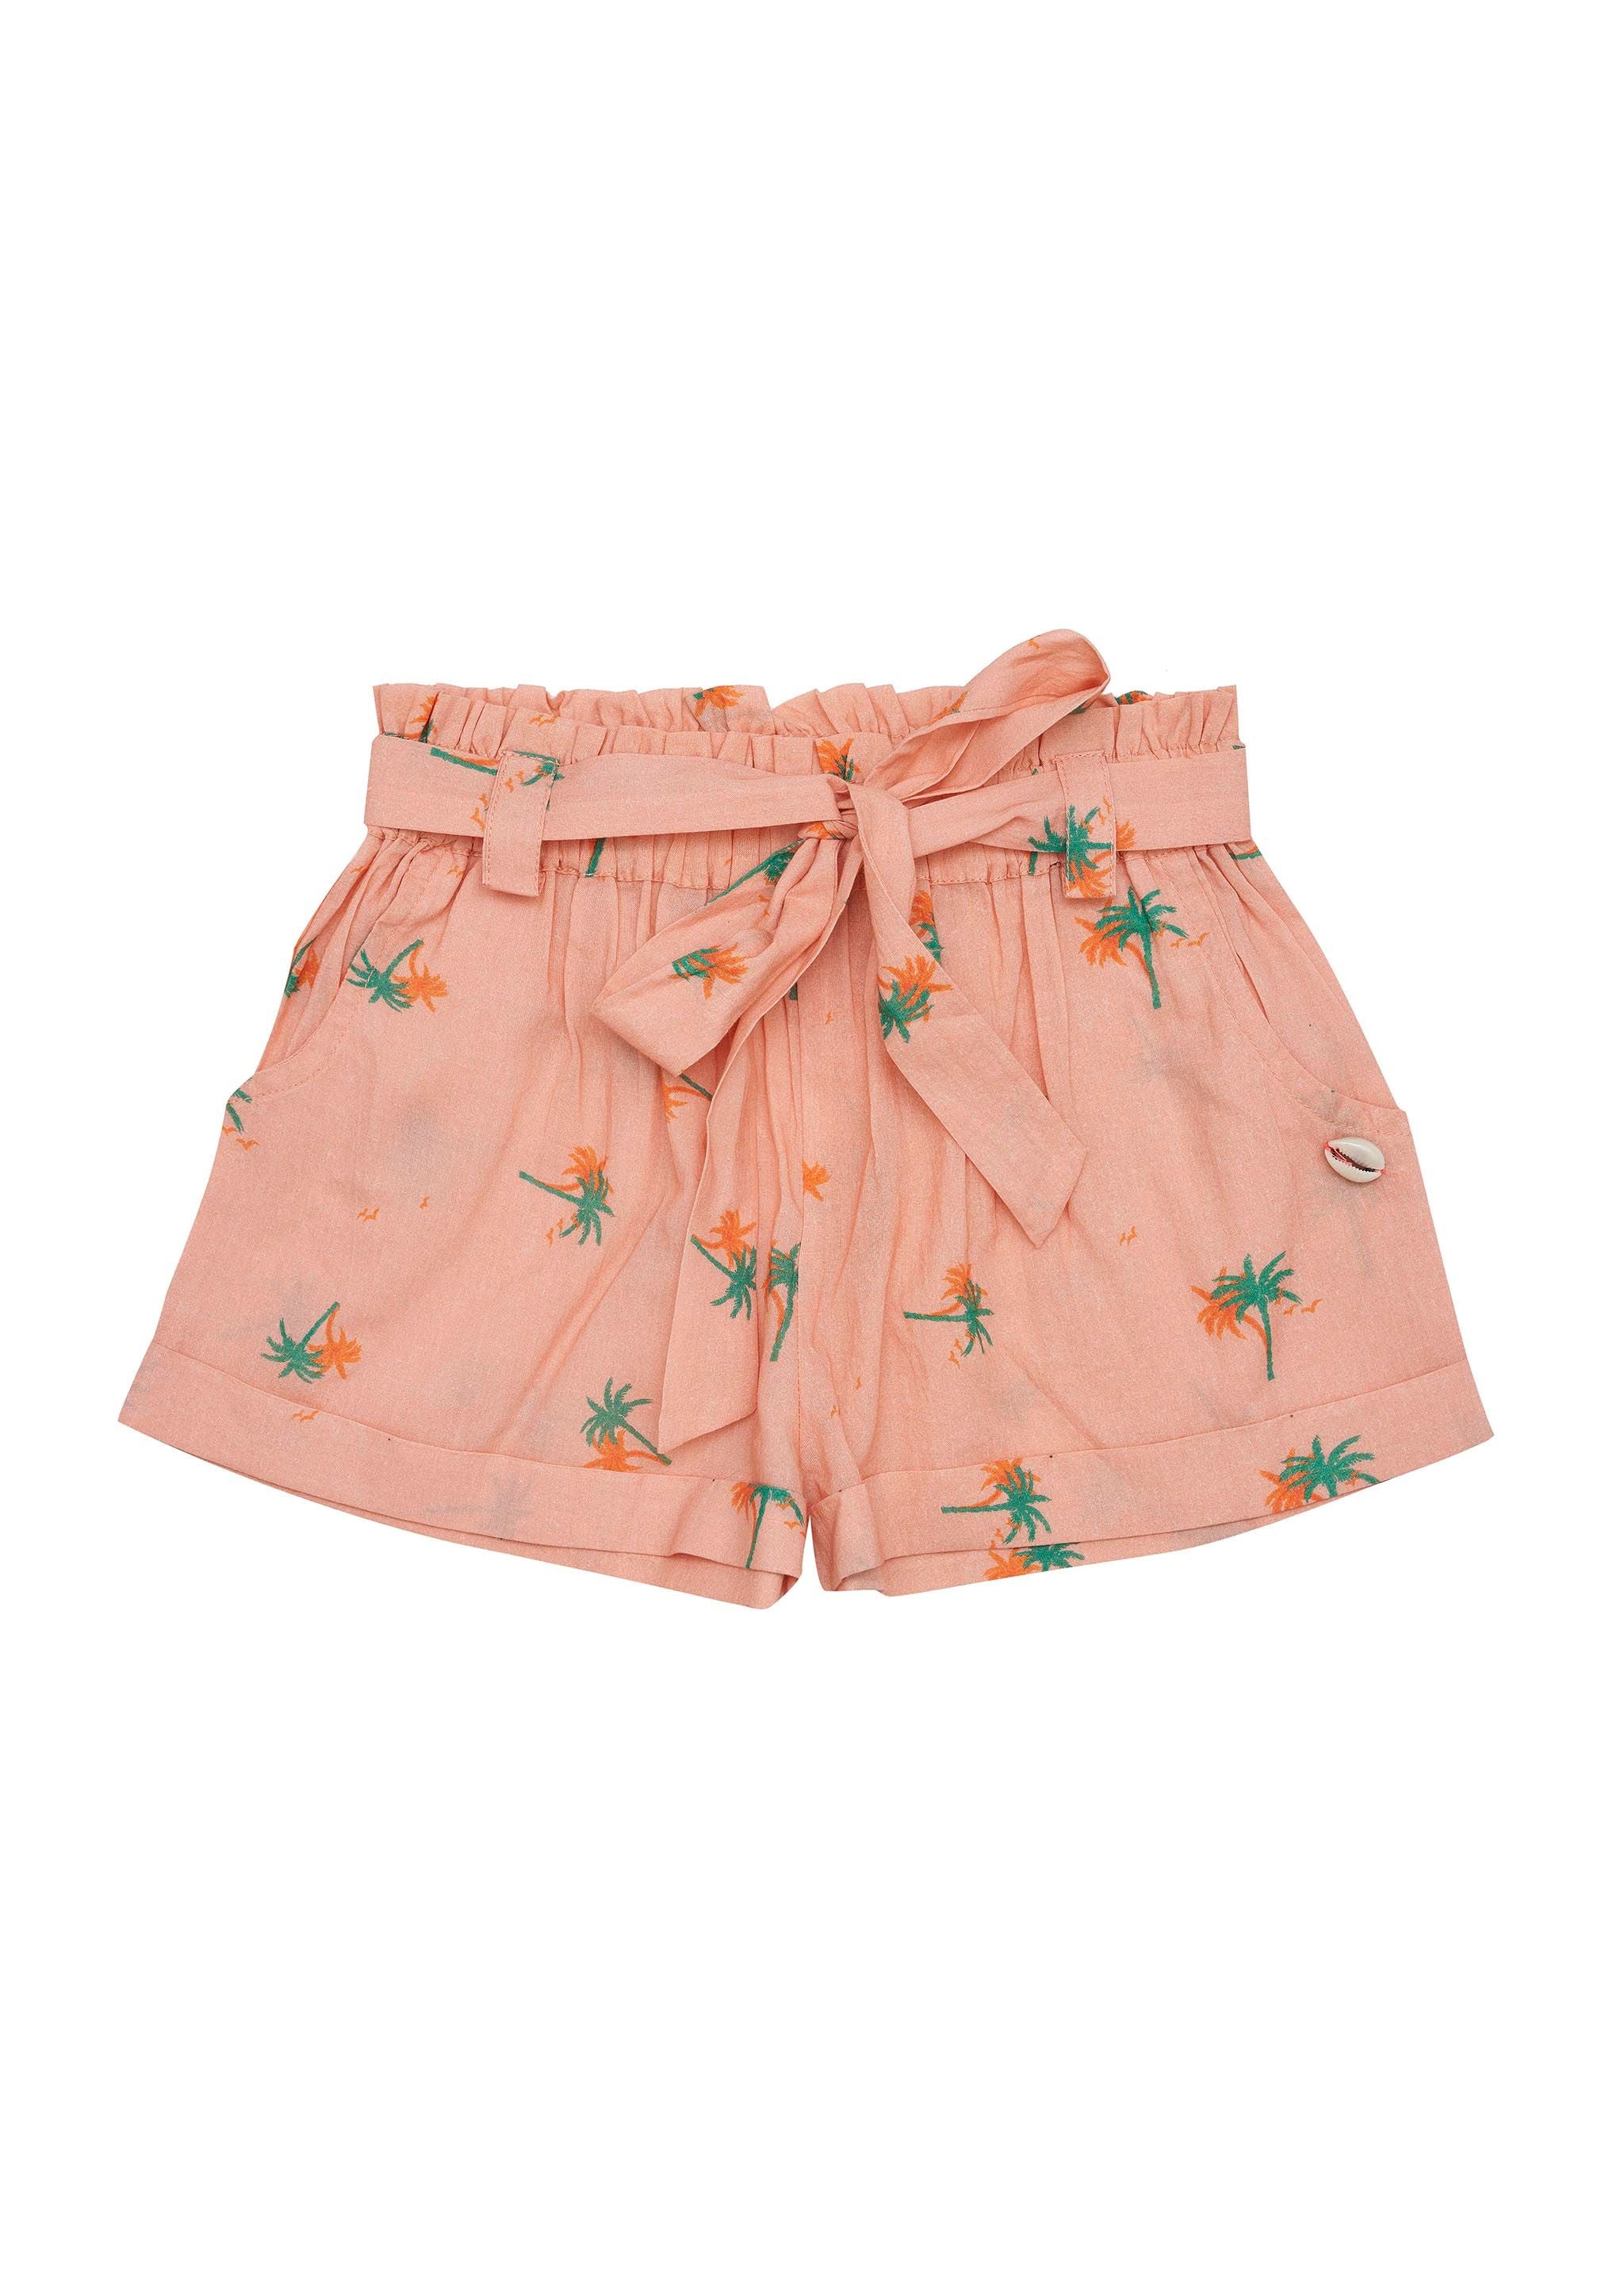 Frankie shorts - Tropical peach